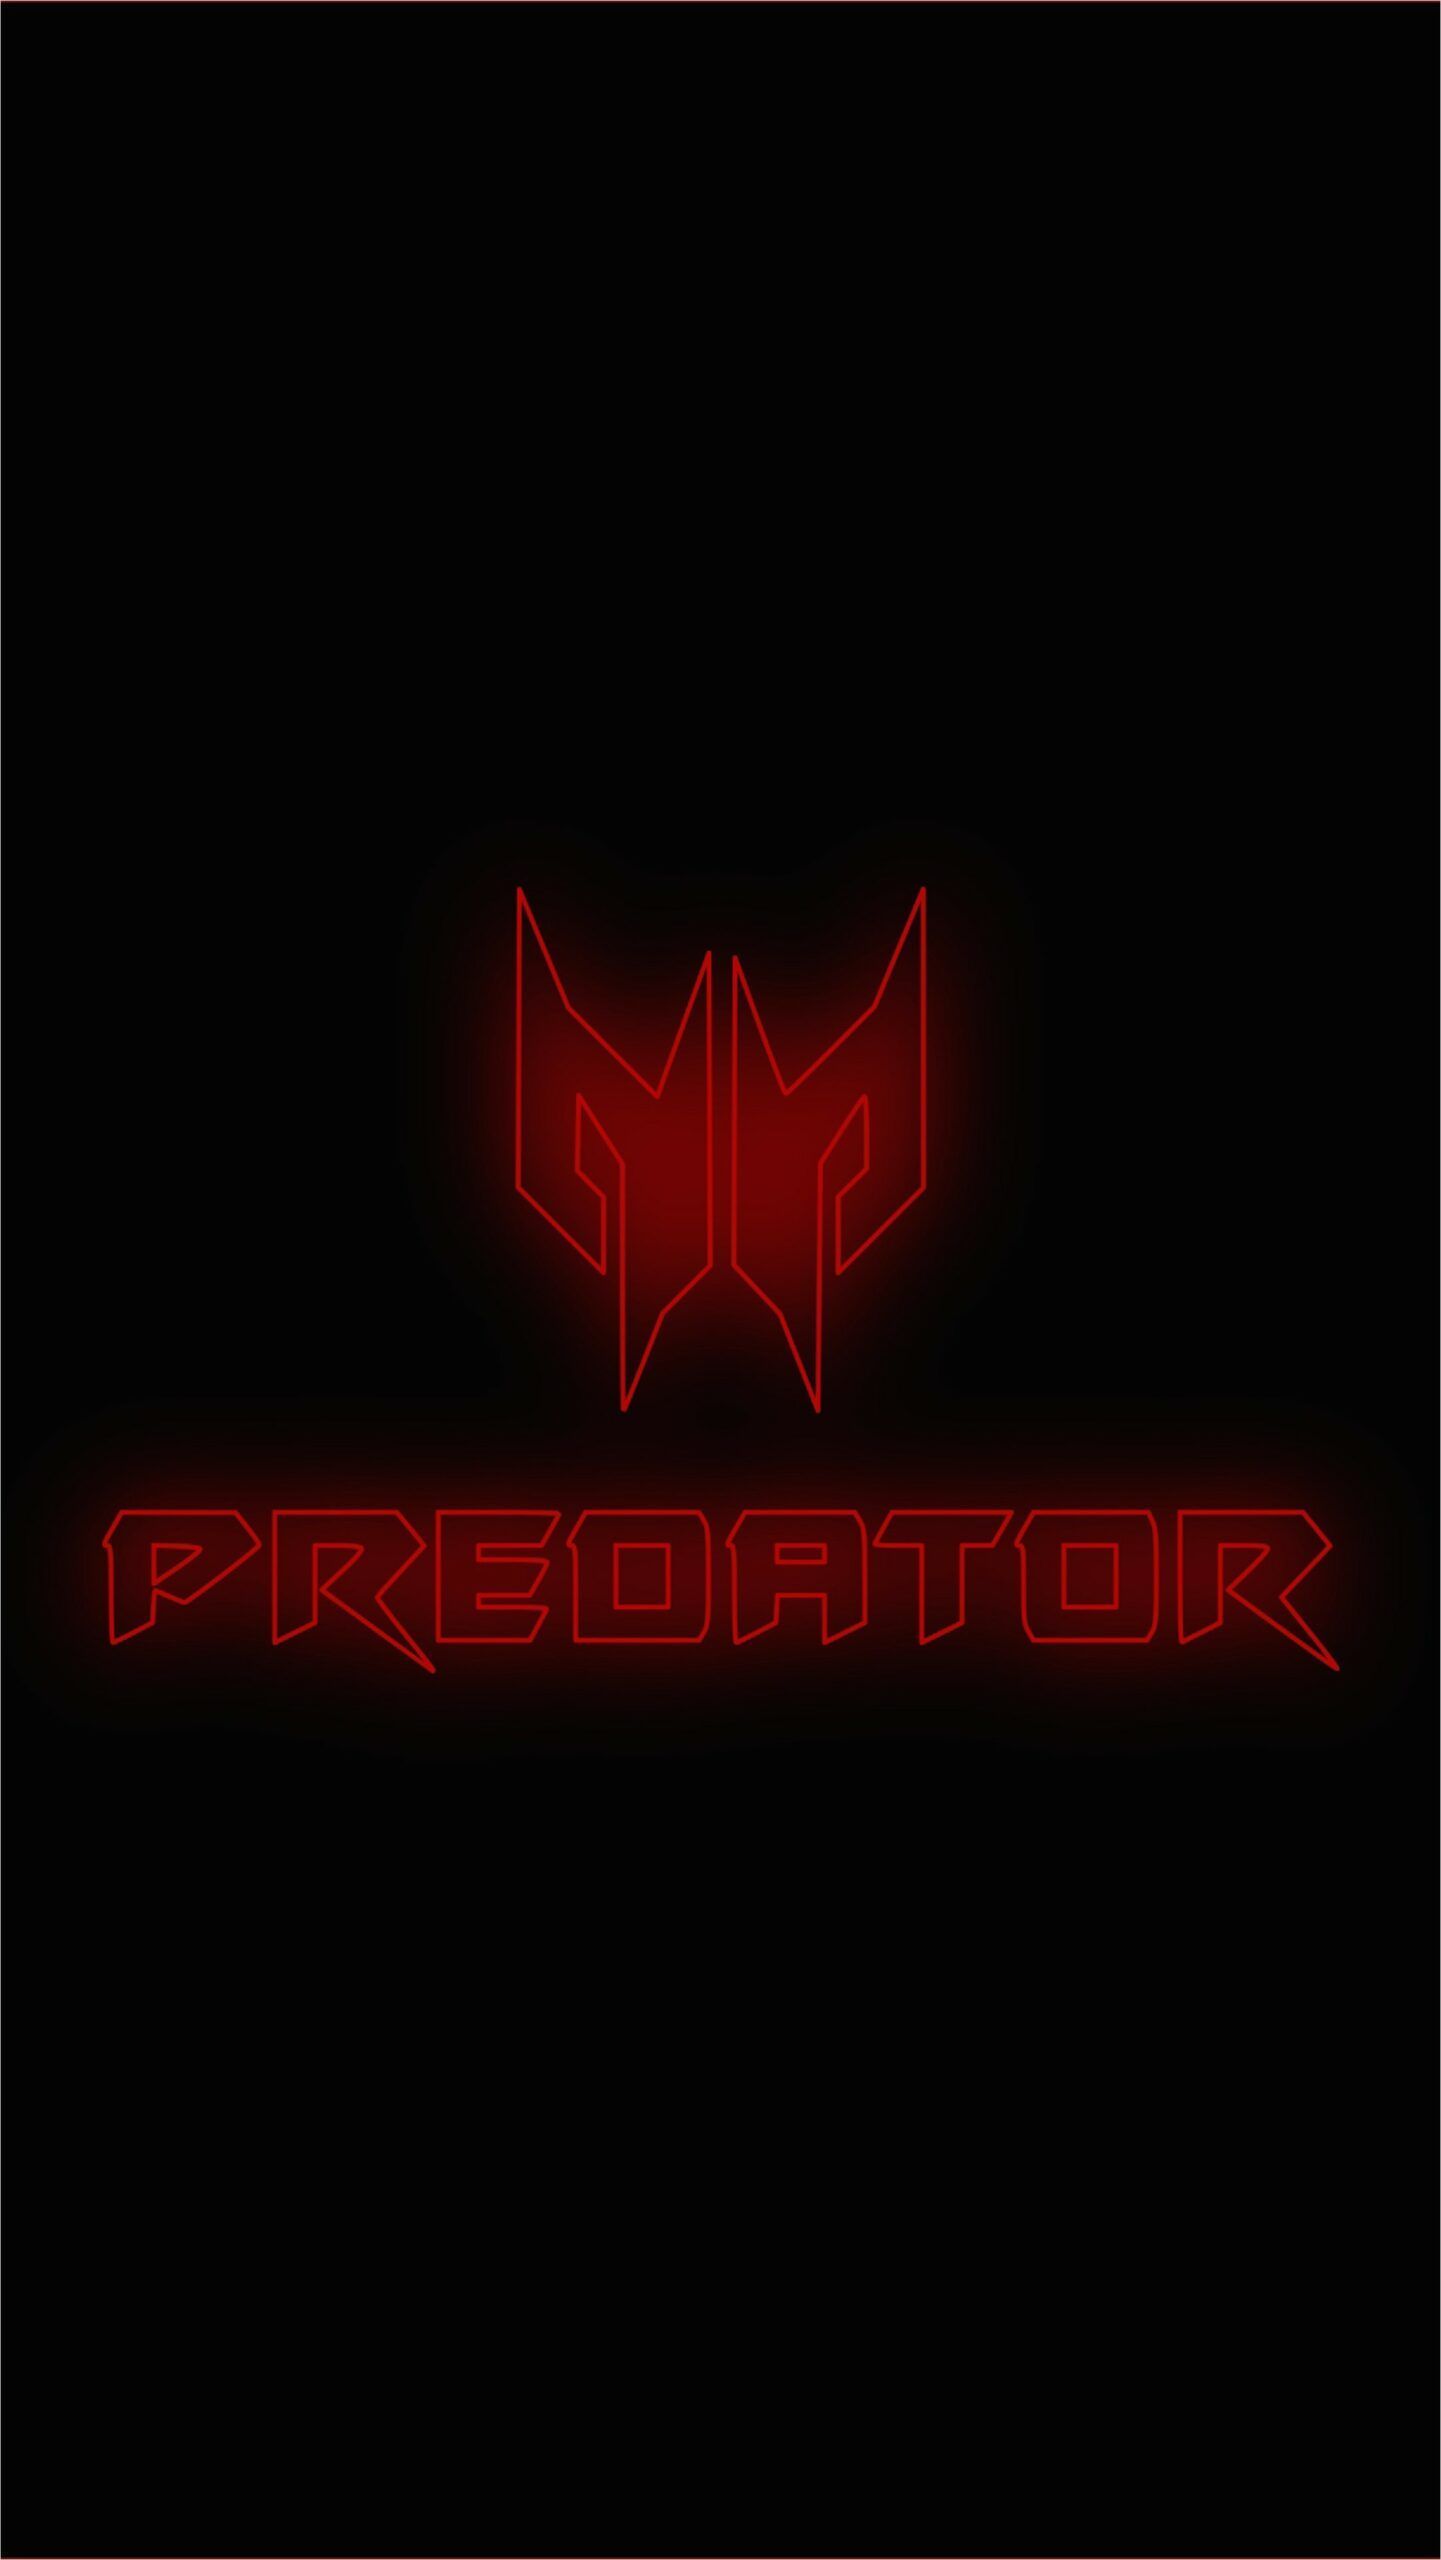 Acer Predator Logo Wallpaper 4k. Wallpaper, Acer, Predator